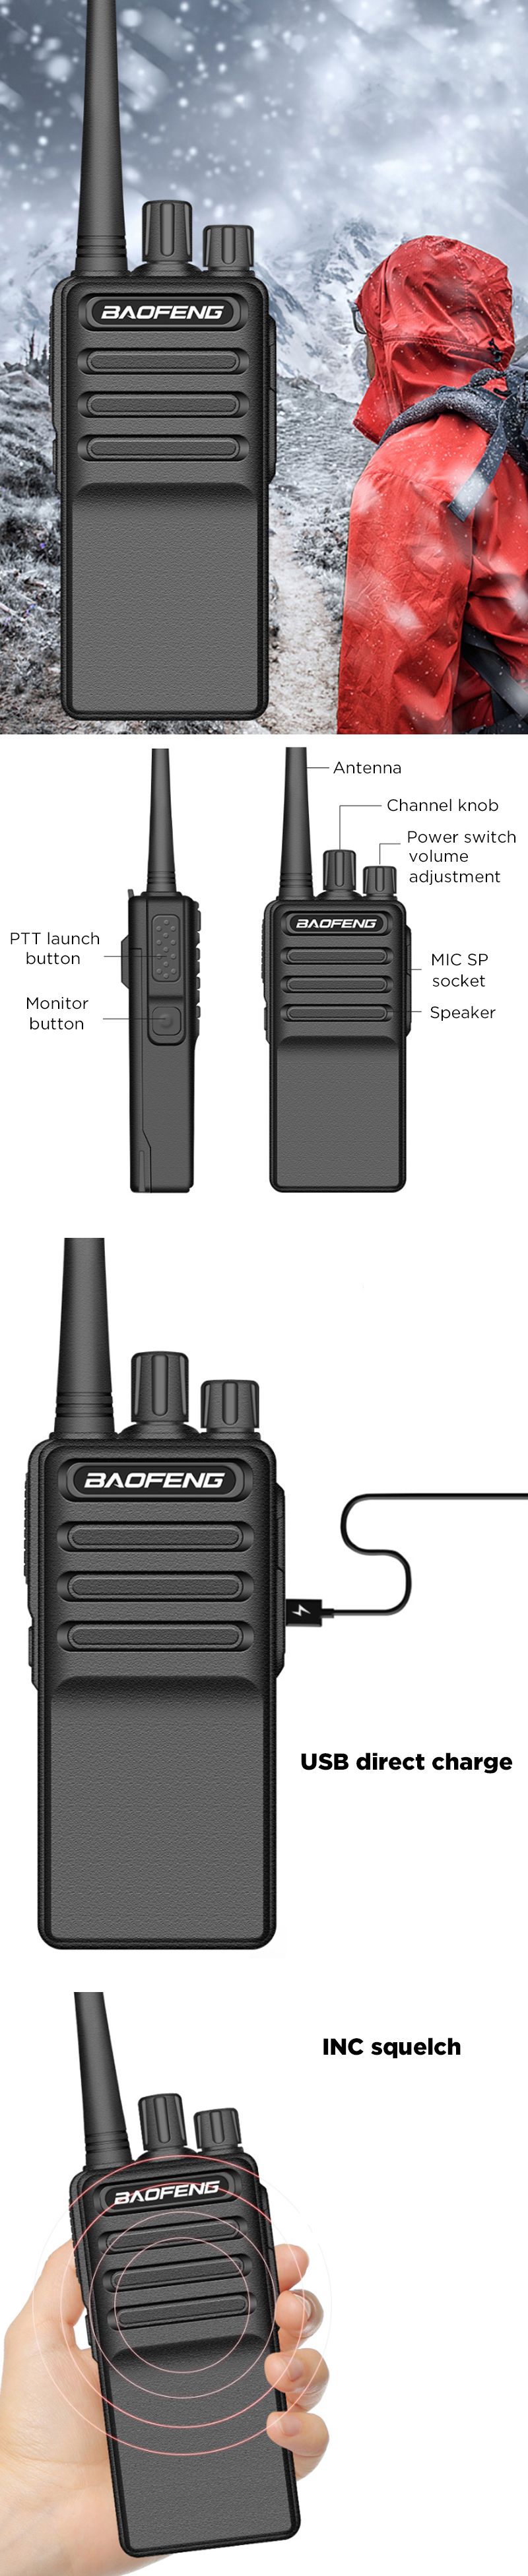 BAOFENG-C5-8W-5-20KM-USB-Charging-Ultra-Thin-Handheld-Radio-Walkie-Talkie-400-470MHz-16-Channels-Dri-1571998